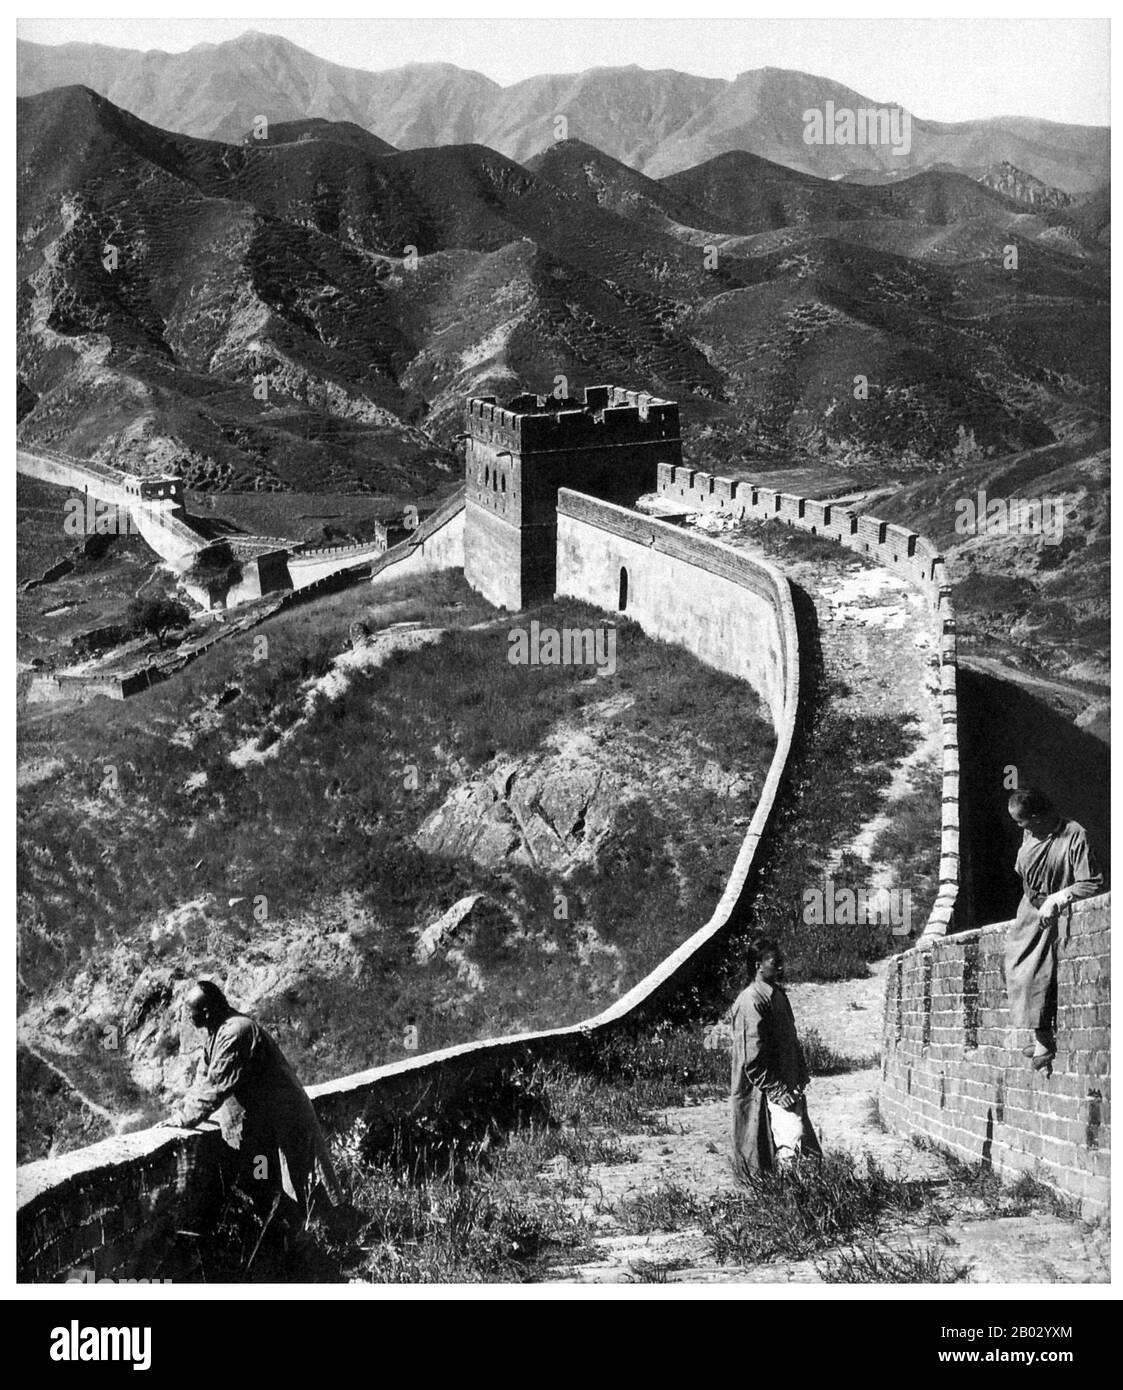 Die Große Mauer (Wanli Changcheng) ist eine der größten Errungenschaften der Menschheit und stammt aus mehr als zwei Jahrtausenden, als eine Reihe kürzerer Mauern während der Qin-Dynastie (221-206 v. u. z.) systematisch miteinander verbunden wurden, um die nördlichen Grenzen Chinas zu schützen. Die Mauer, die ursprünglich gebaut wurde, um barbarische Eindringlinge aus dem Norden fernzuhalten, erstreckt sich über 5.900 km (3.700 Meilen) vom Bohai-Golf im gelben Meer bis Jiayuguan in den Bergen der Provinz Gansu. Während der Großteil der Mauer heute in Trümmern liegt, wurden in den letzten Jahren einige Abschnitte repariert. Die Ming-Machthaber, die 1368 dem Außerirdischen ein Ende setzten Stockfoto